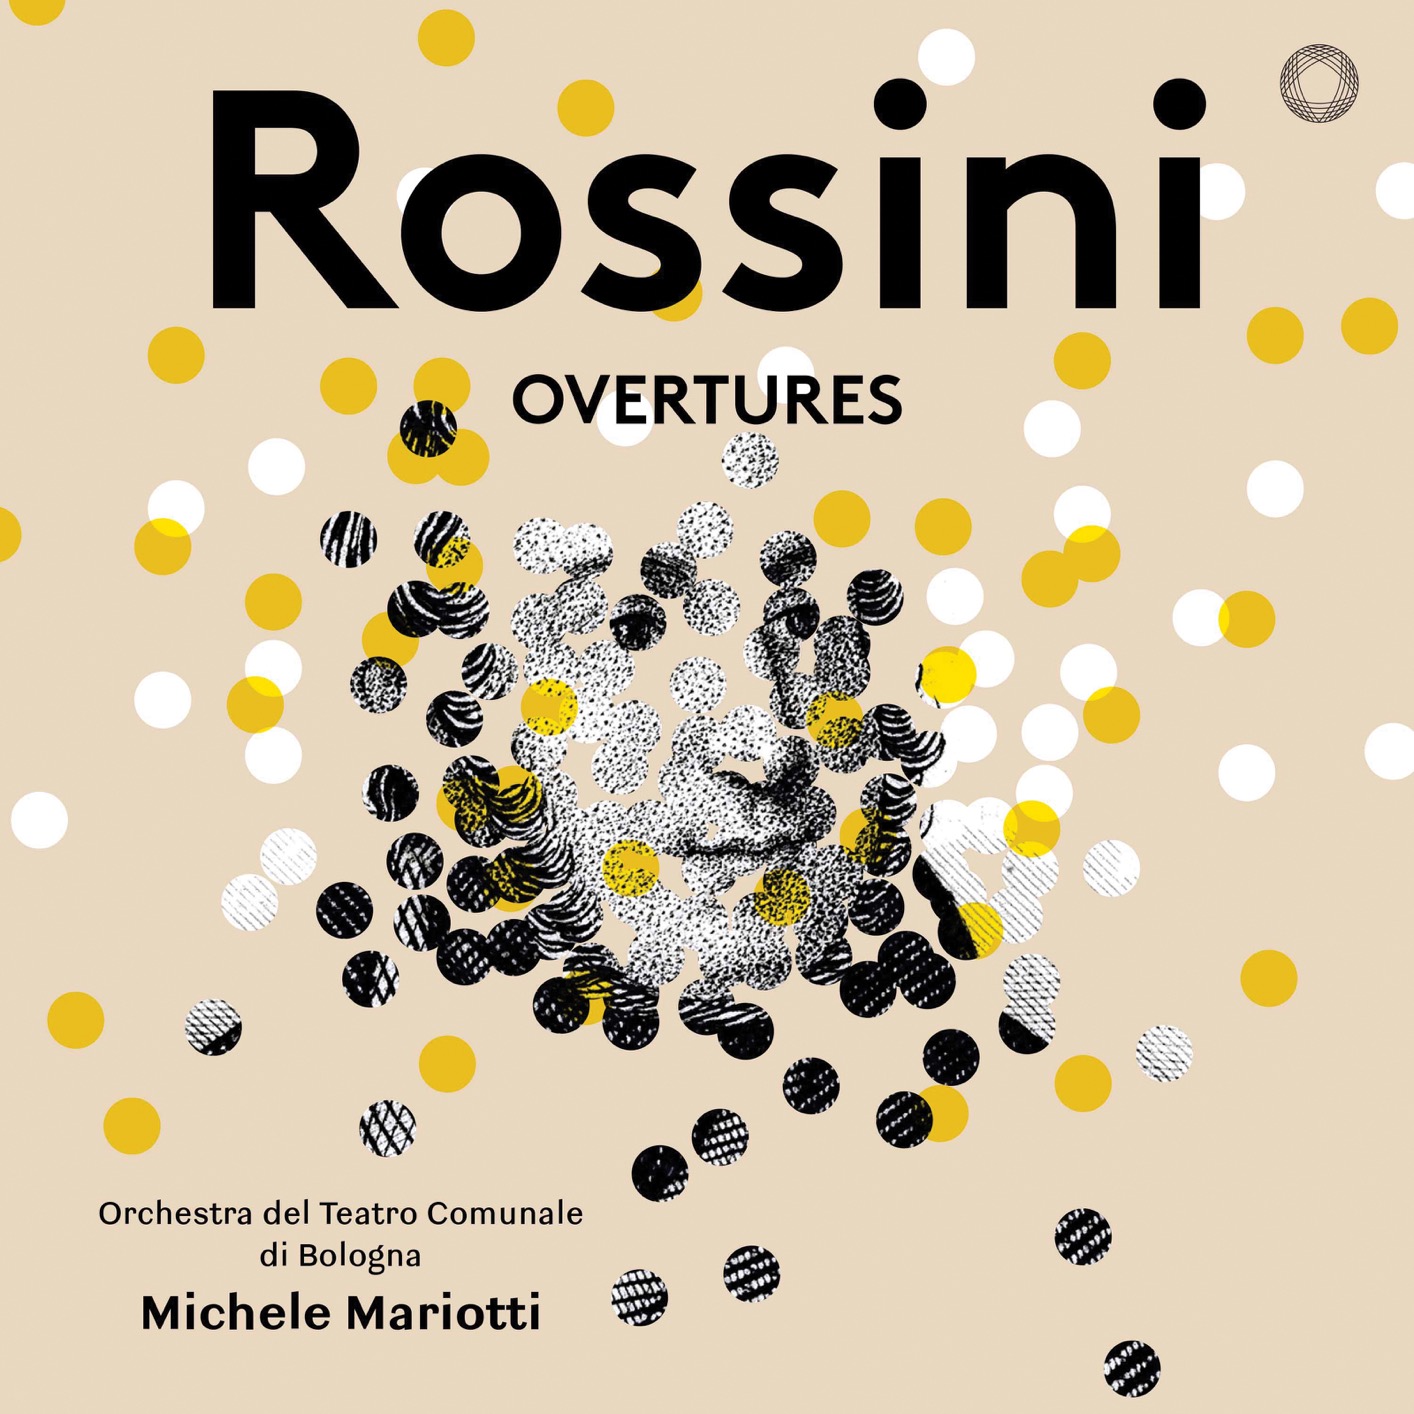 Orchestra del Teatro Comunale di Bologna & Michele Mariotti – Rossini: Overtures (2018) [FLAC 24bit/96kHz]